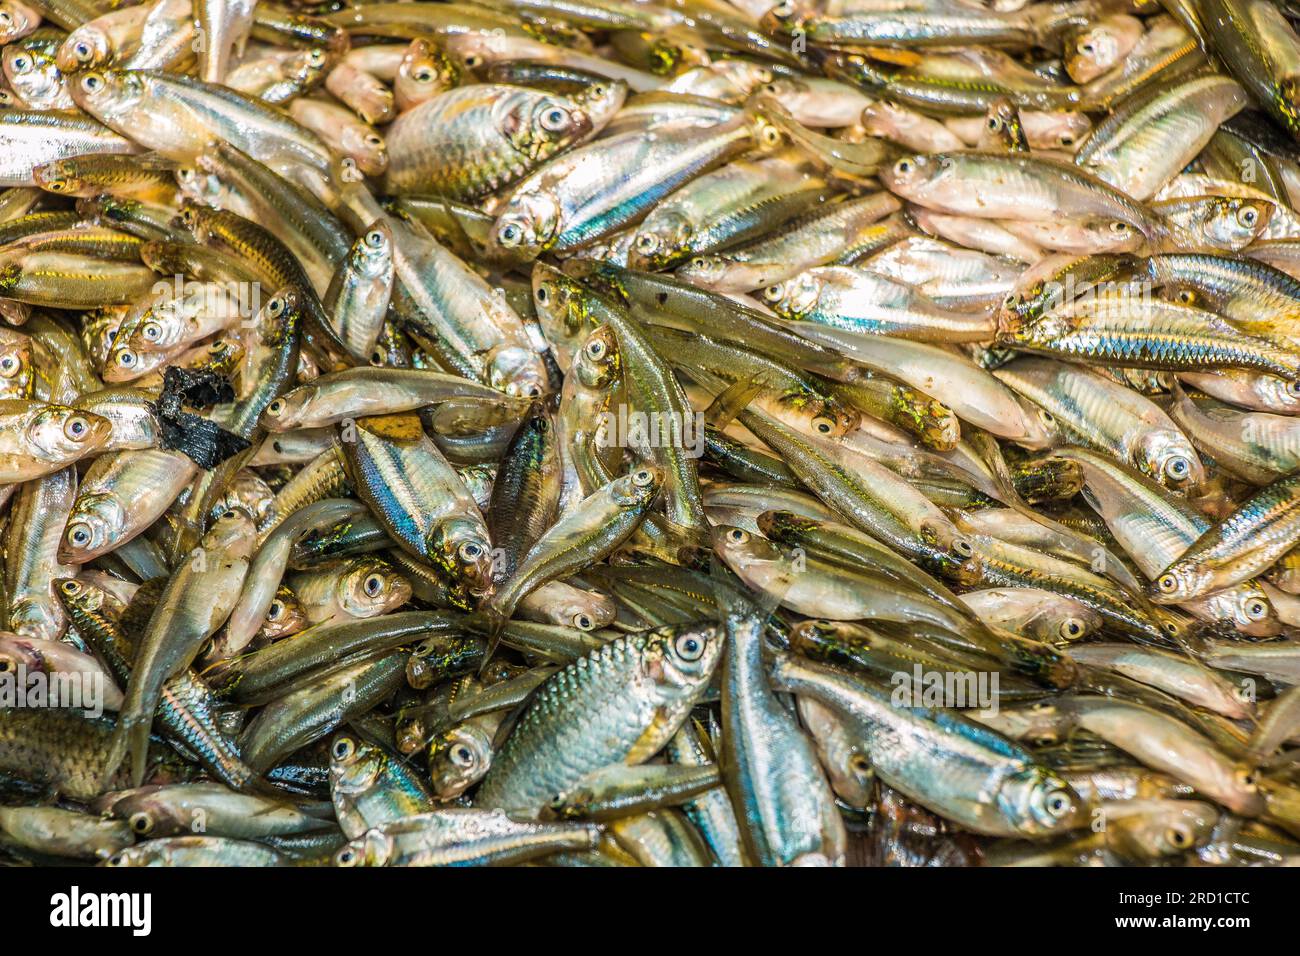 Eine Sammlung kleiner einheimischer Fische aus Bangladesch Stockfoto